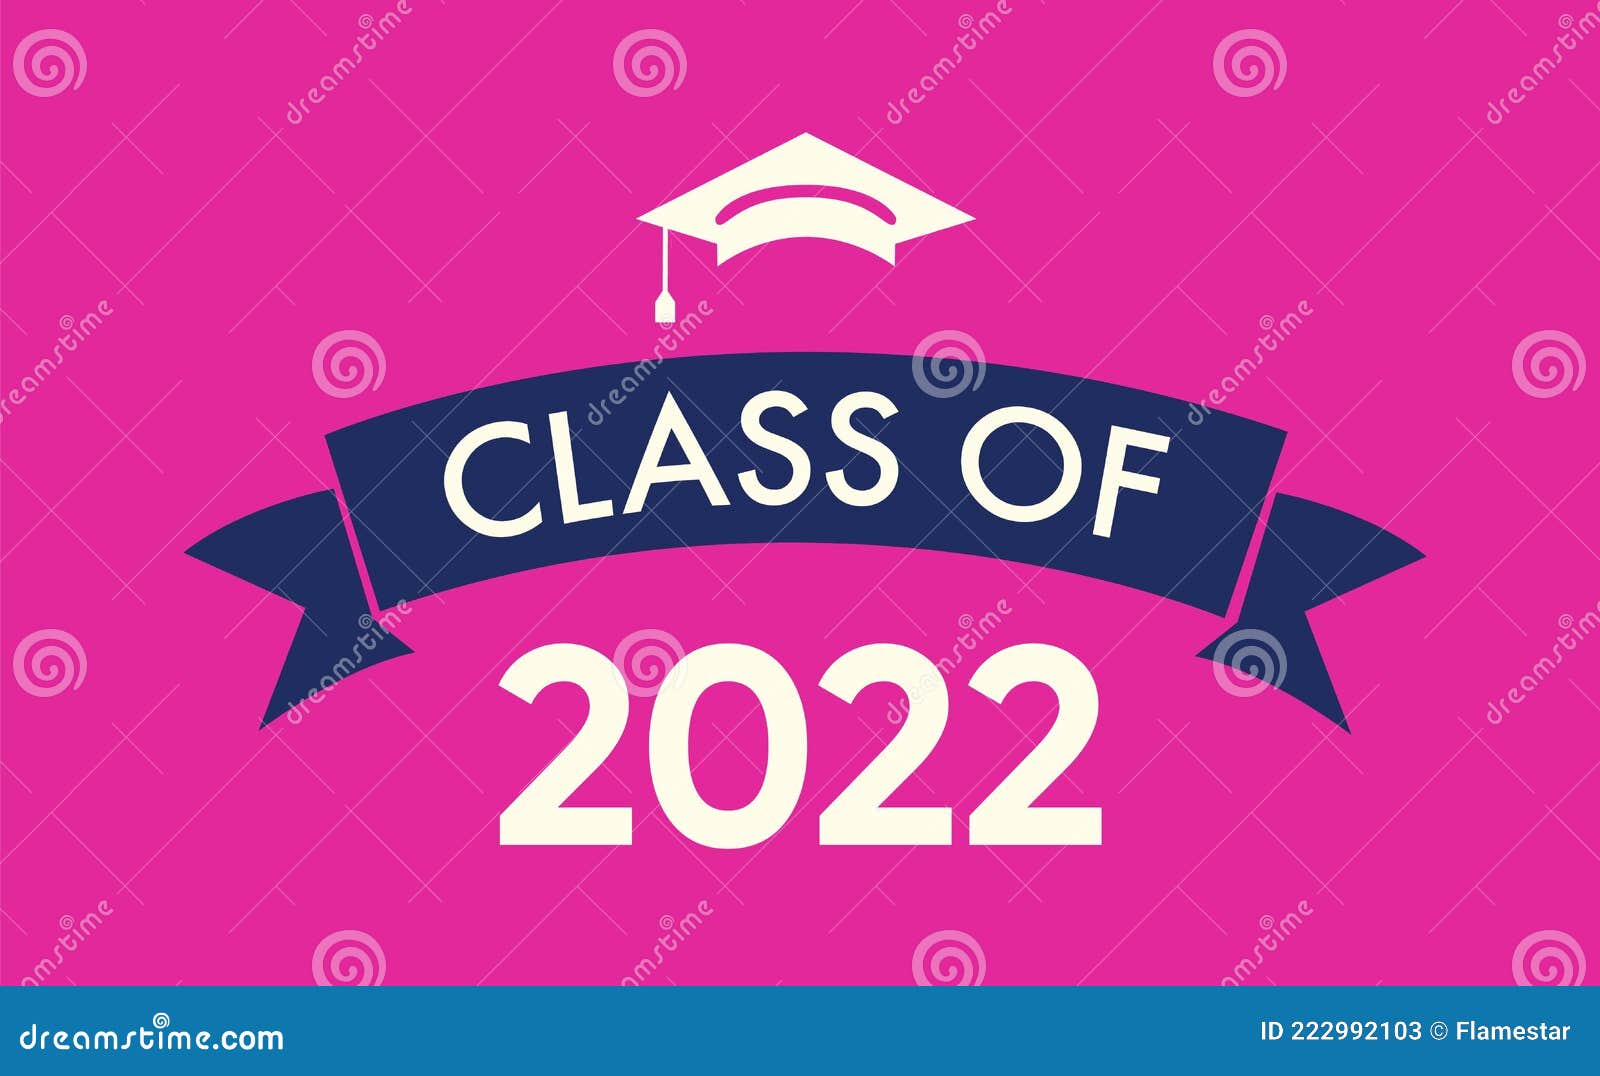 Lớp 2022 với mũ tốt nghiệp đơn giản trên nền hồng là hình ảnh tuyệt vời để mừng kết thúc một khoảng thời gian đầy học hỏi và trưởng thành. Hãy cùng tham gia khám phá những bức hình này để thấy được tình đoàn kết và sự cổ vũ đầy ý nghĩa mà đồng học của bạn dành cho nhau.